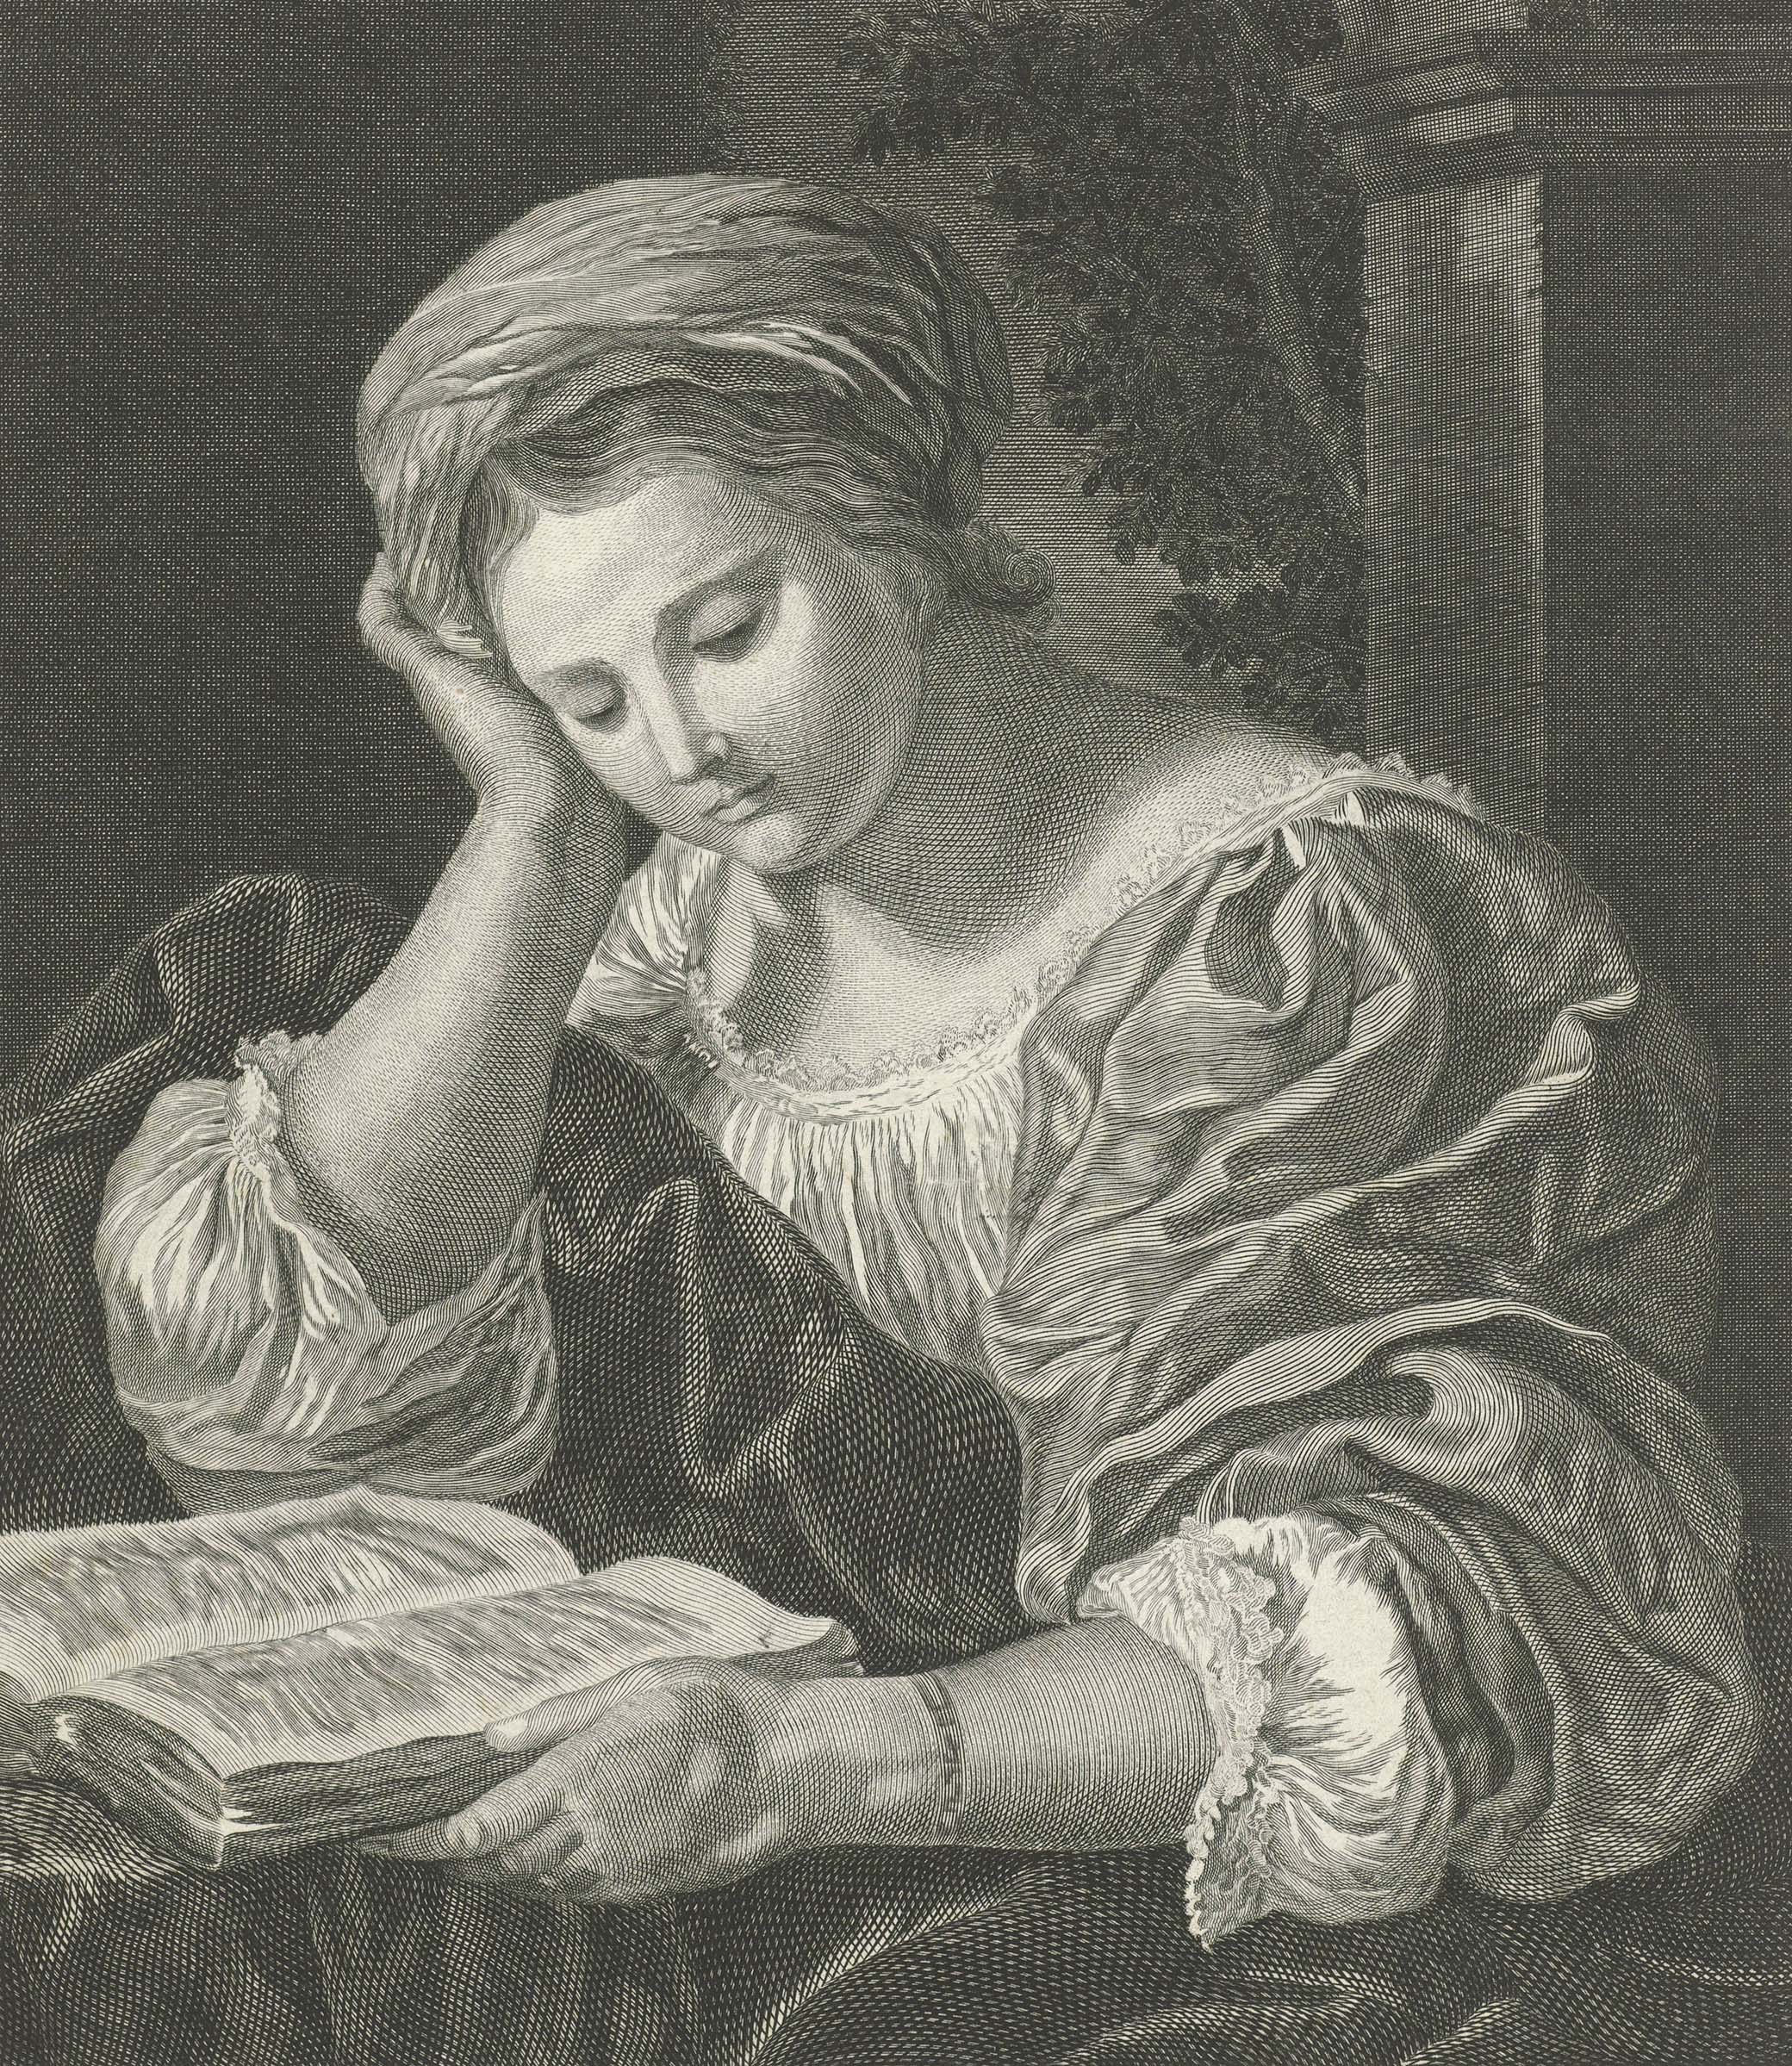 Reading Woman, by Pieter Willem van Megen, c. 1760